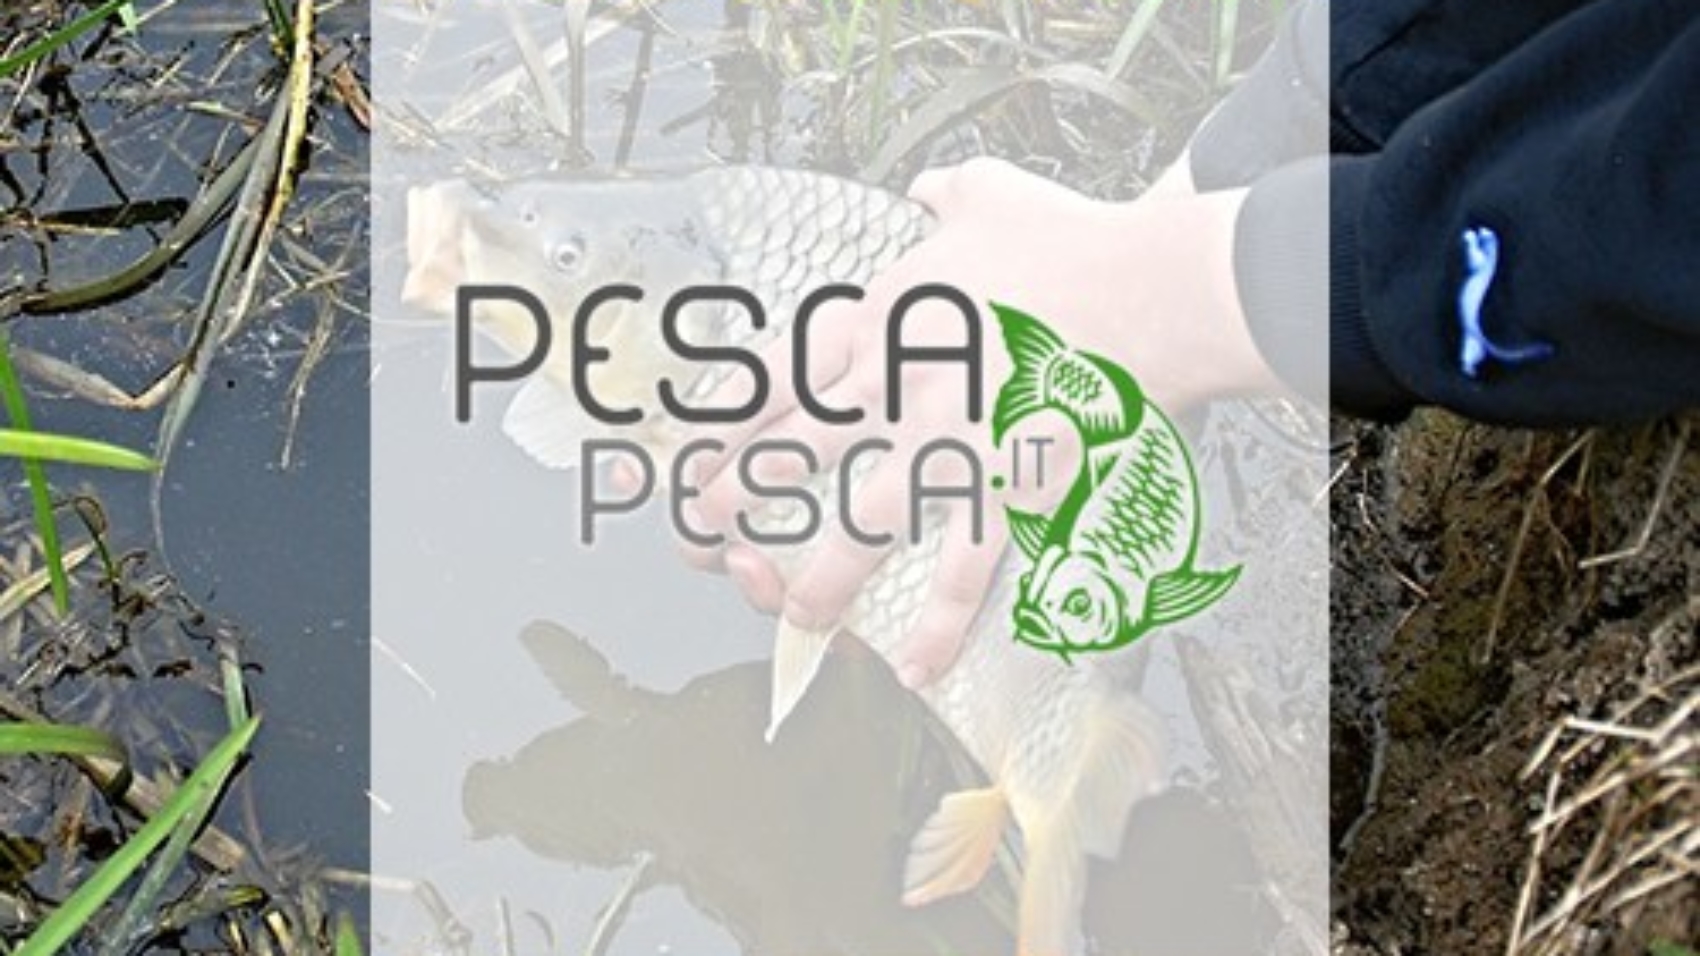 Pescapesca.it